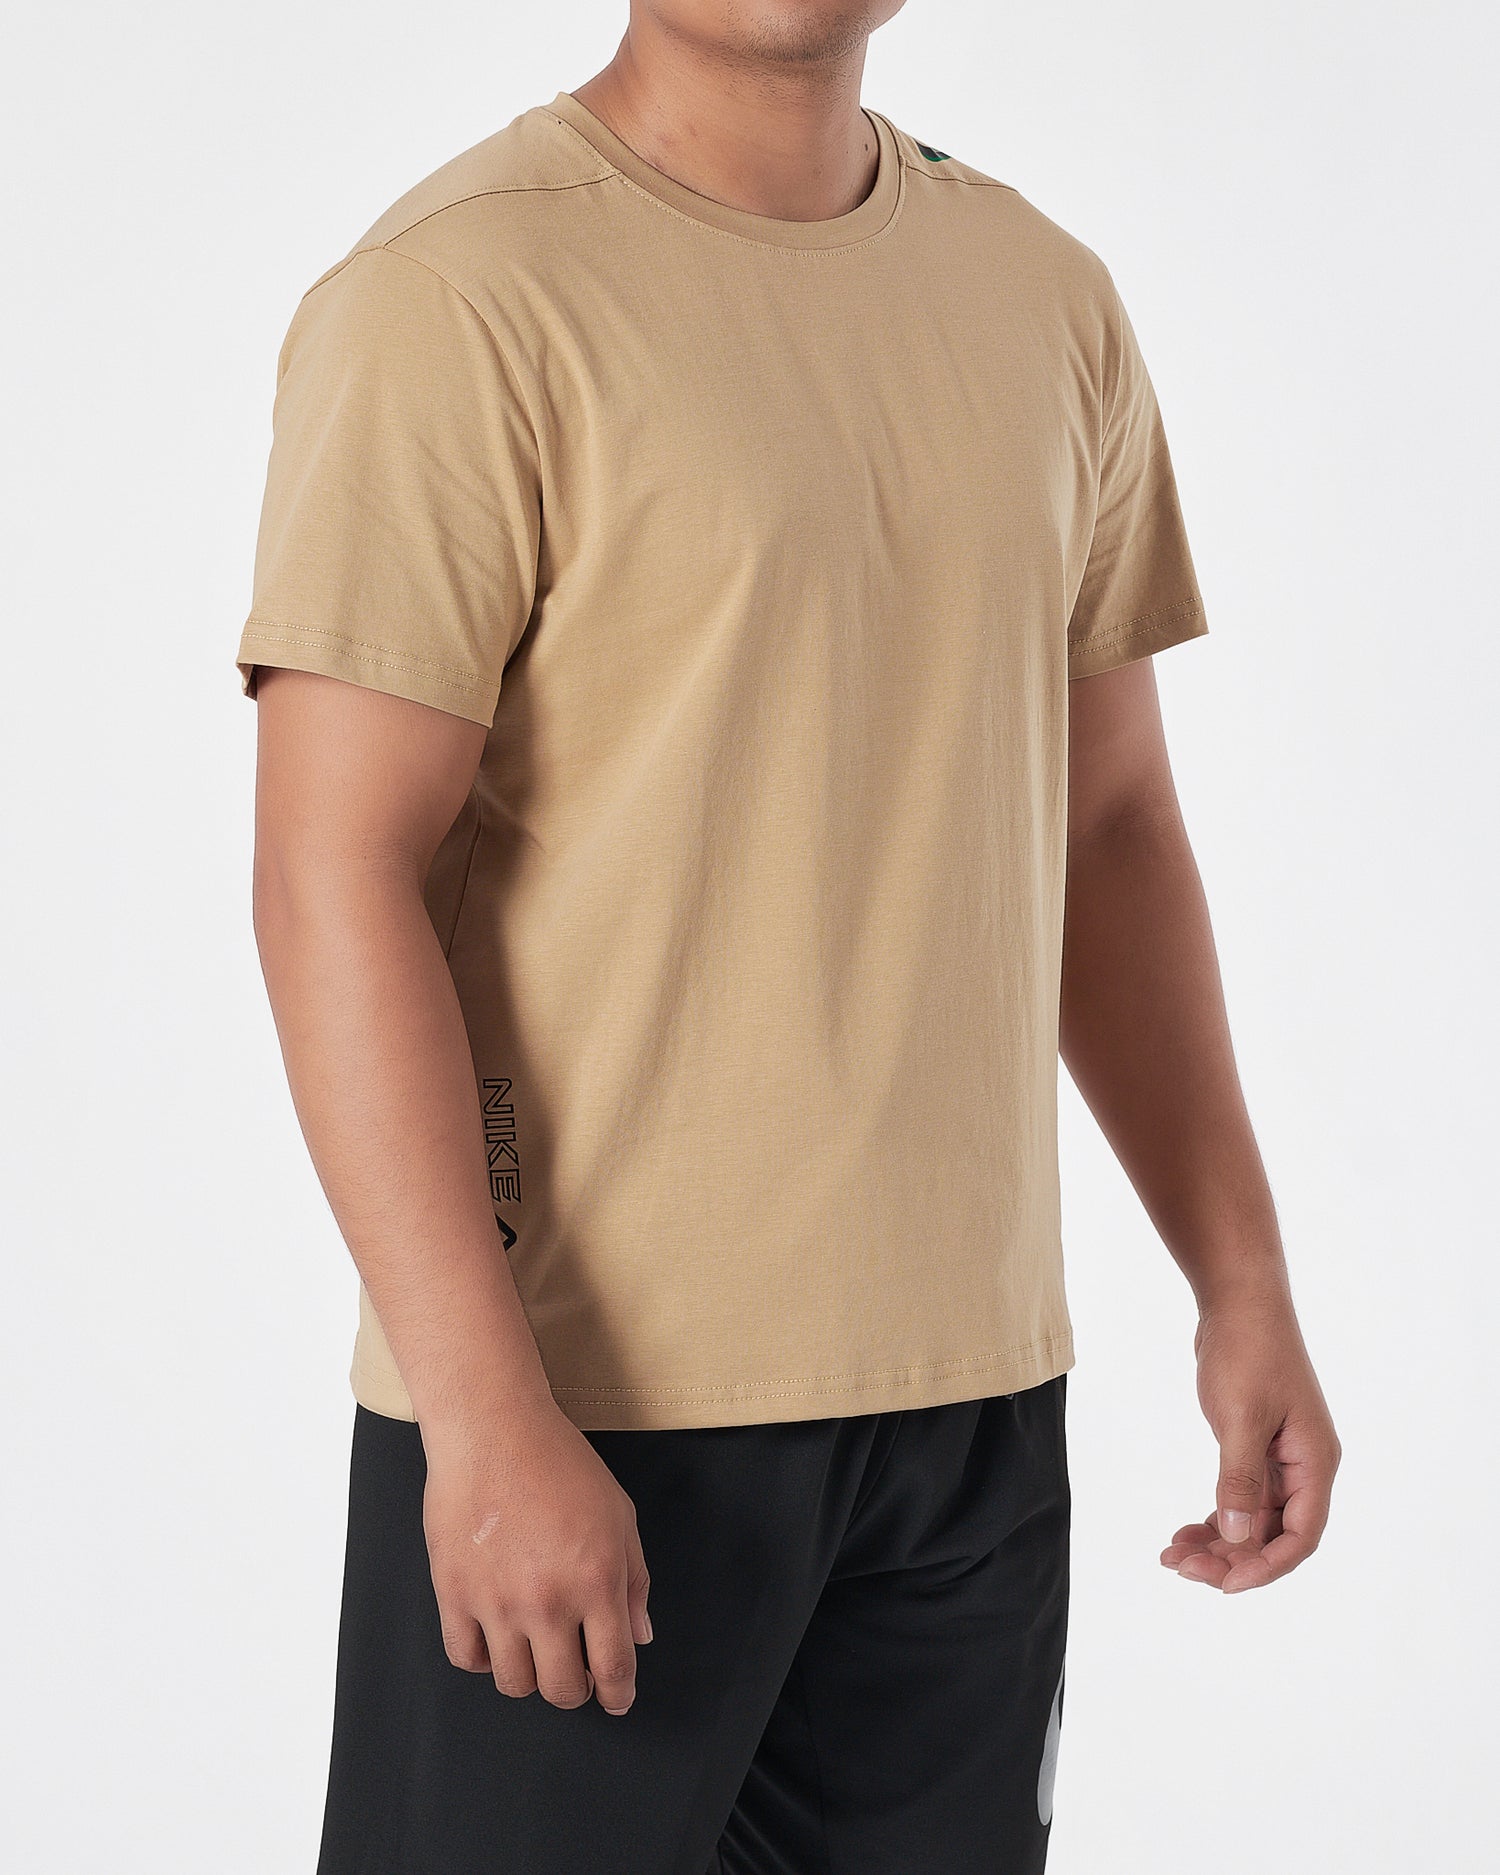 NIK Swooh  Shoulder Printed Men Cream T-Shirt 13.50